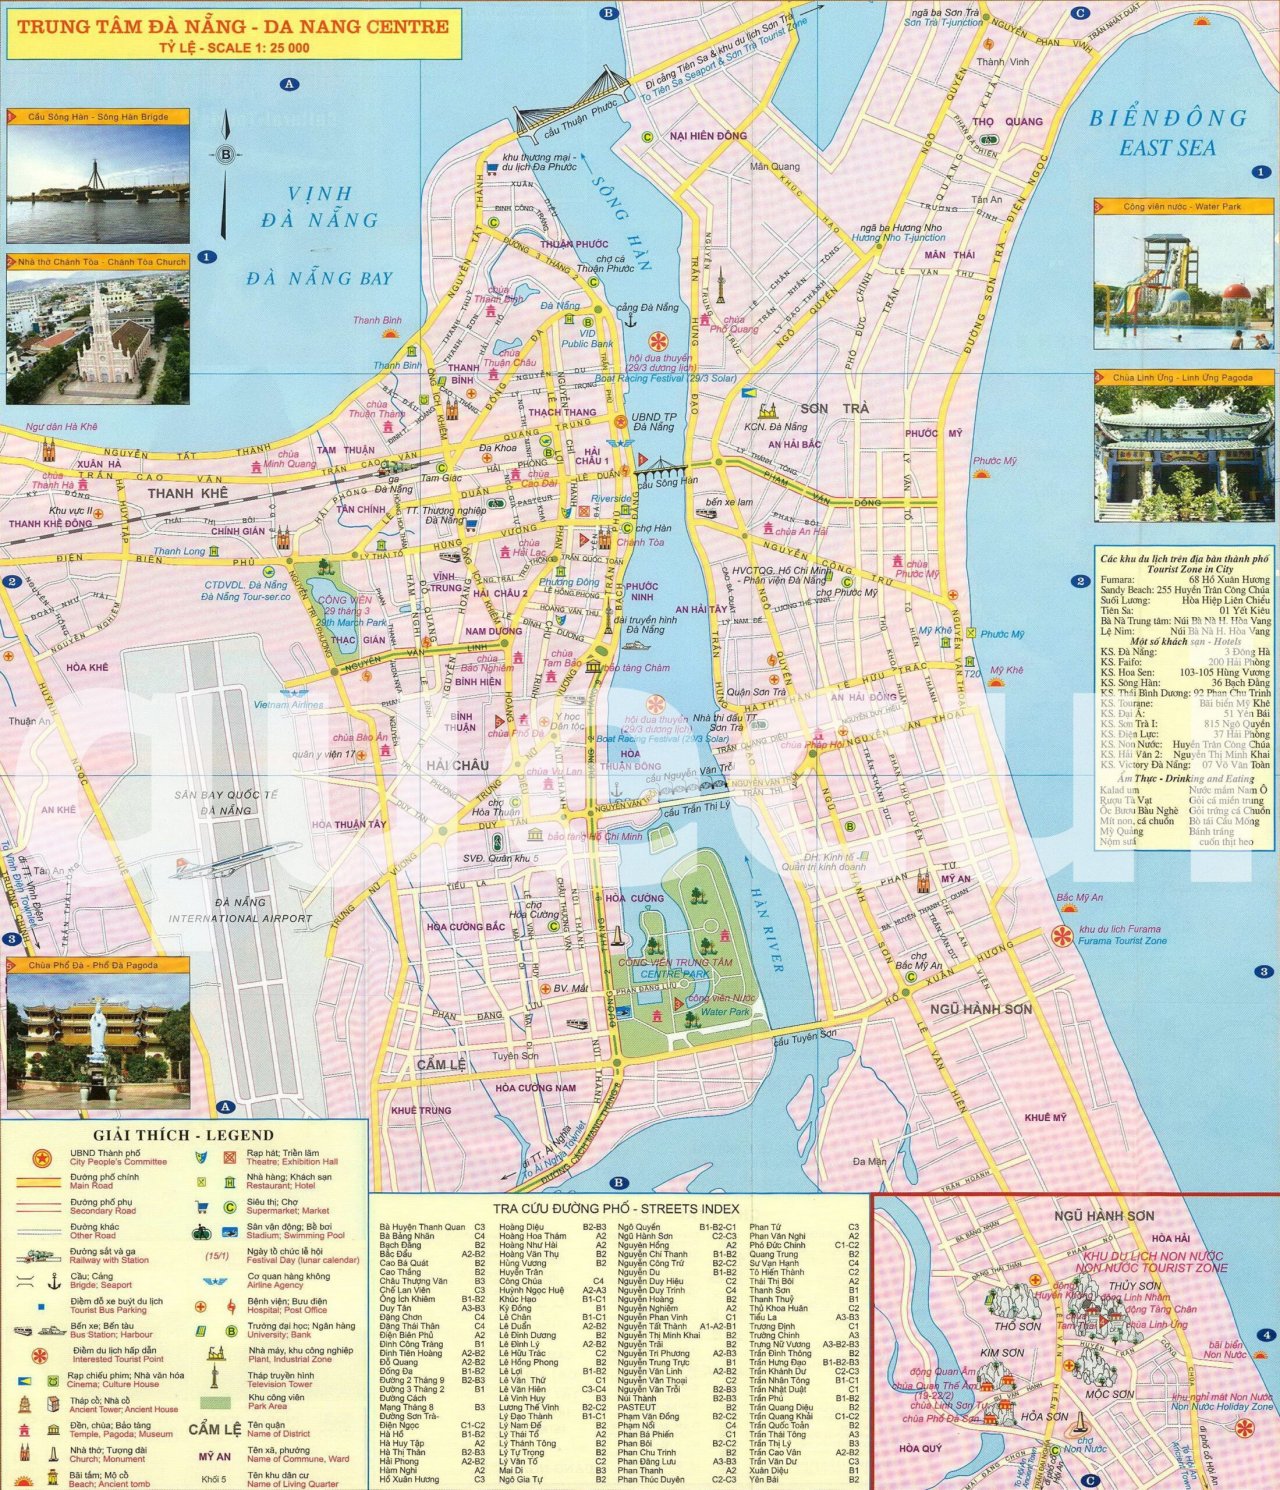 Quý khách có thể truy cập vào bản đồ cấp độ dịch Đà Nẵng 2024 để cập nhật tình trạng dịch tại khu vực này. Các thông tin sẽ được cập nhật đầy đủ để giúp mọi người đưa ra quyết định và hành động phù hợp, đảm bảo an toàn cho bản thân và cộng đồng.